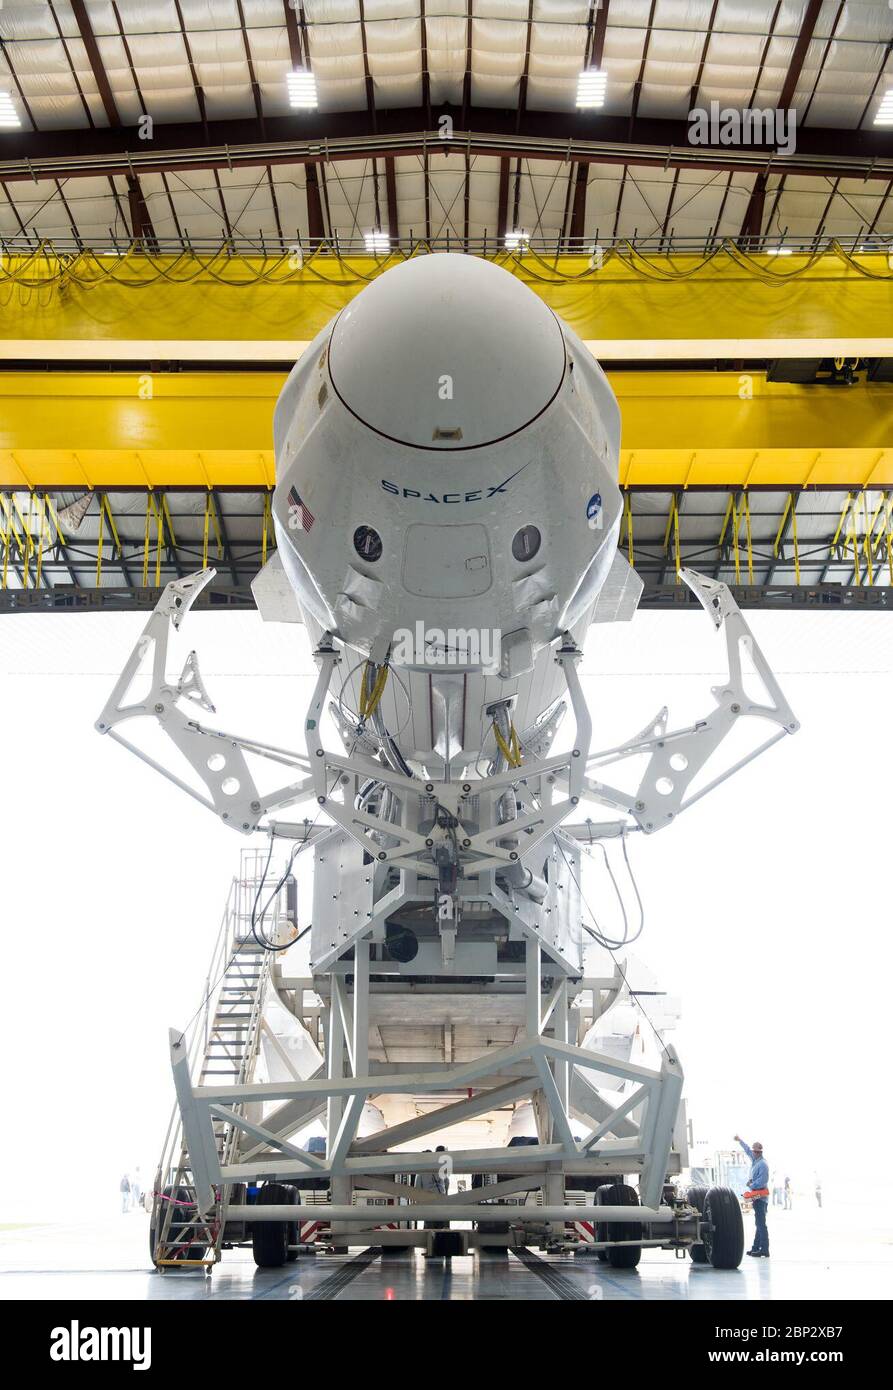 SpaceX Demo-1 Rollout EINE SpaceX Falcon 9 Rakete mit dem Crew Dragon Raumschiff an Bord des Unternehmens wird gesehen, wie es aus der horizontalen Integrationseinrichtung am Launch Complex 39A rollt, während die Vorbereitungen für die Demo-1 Mission, 28. Februar 2019 im Kennedy Space Center in Florida fortgesetzt werden. Die Demo-1 Mission wird der erste Start eines kommerziell gebauten und betriebenen amerikanischen Raumschiffs- und Raumfahrtsystems sein, das für Menschen als Teil des NASA Commercial Crew Programms entwickelt wurde. Die Mission, die derzeit für einen Start um 2:49 Uhr am 2. März vorgesehen ist, dient als End-to-End-Test der Systemfunktionen Stockfoto